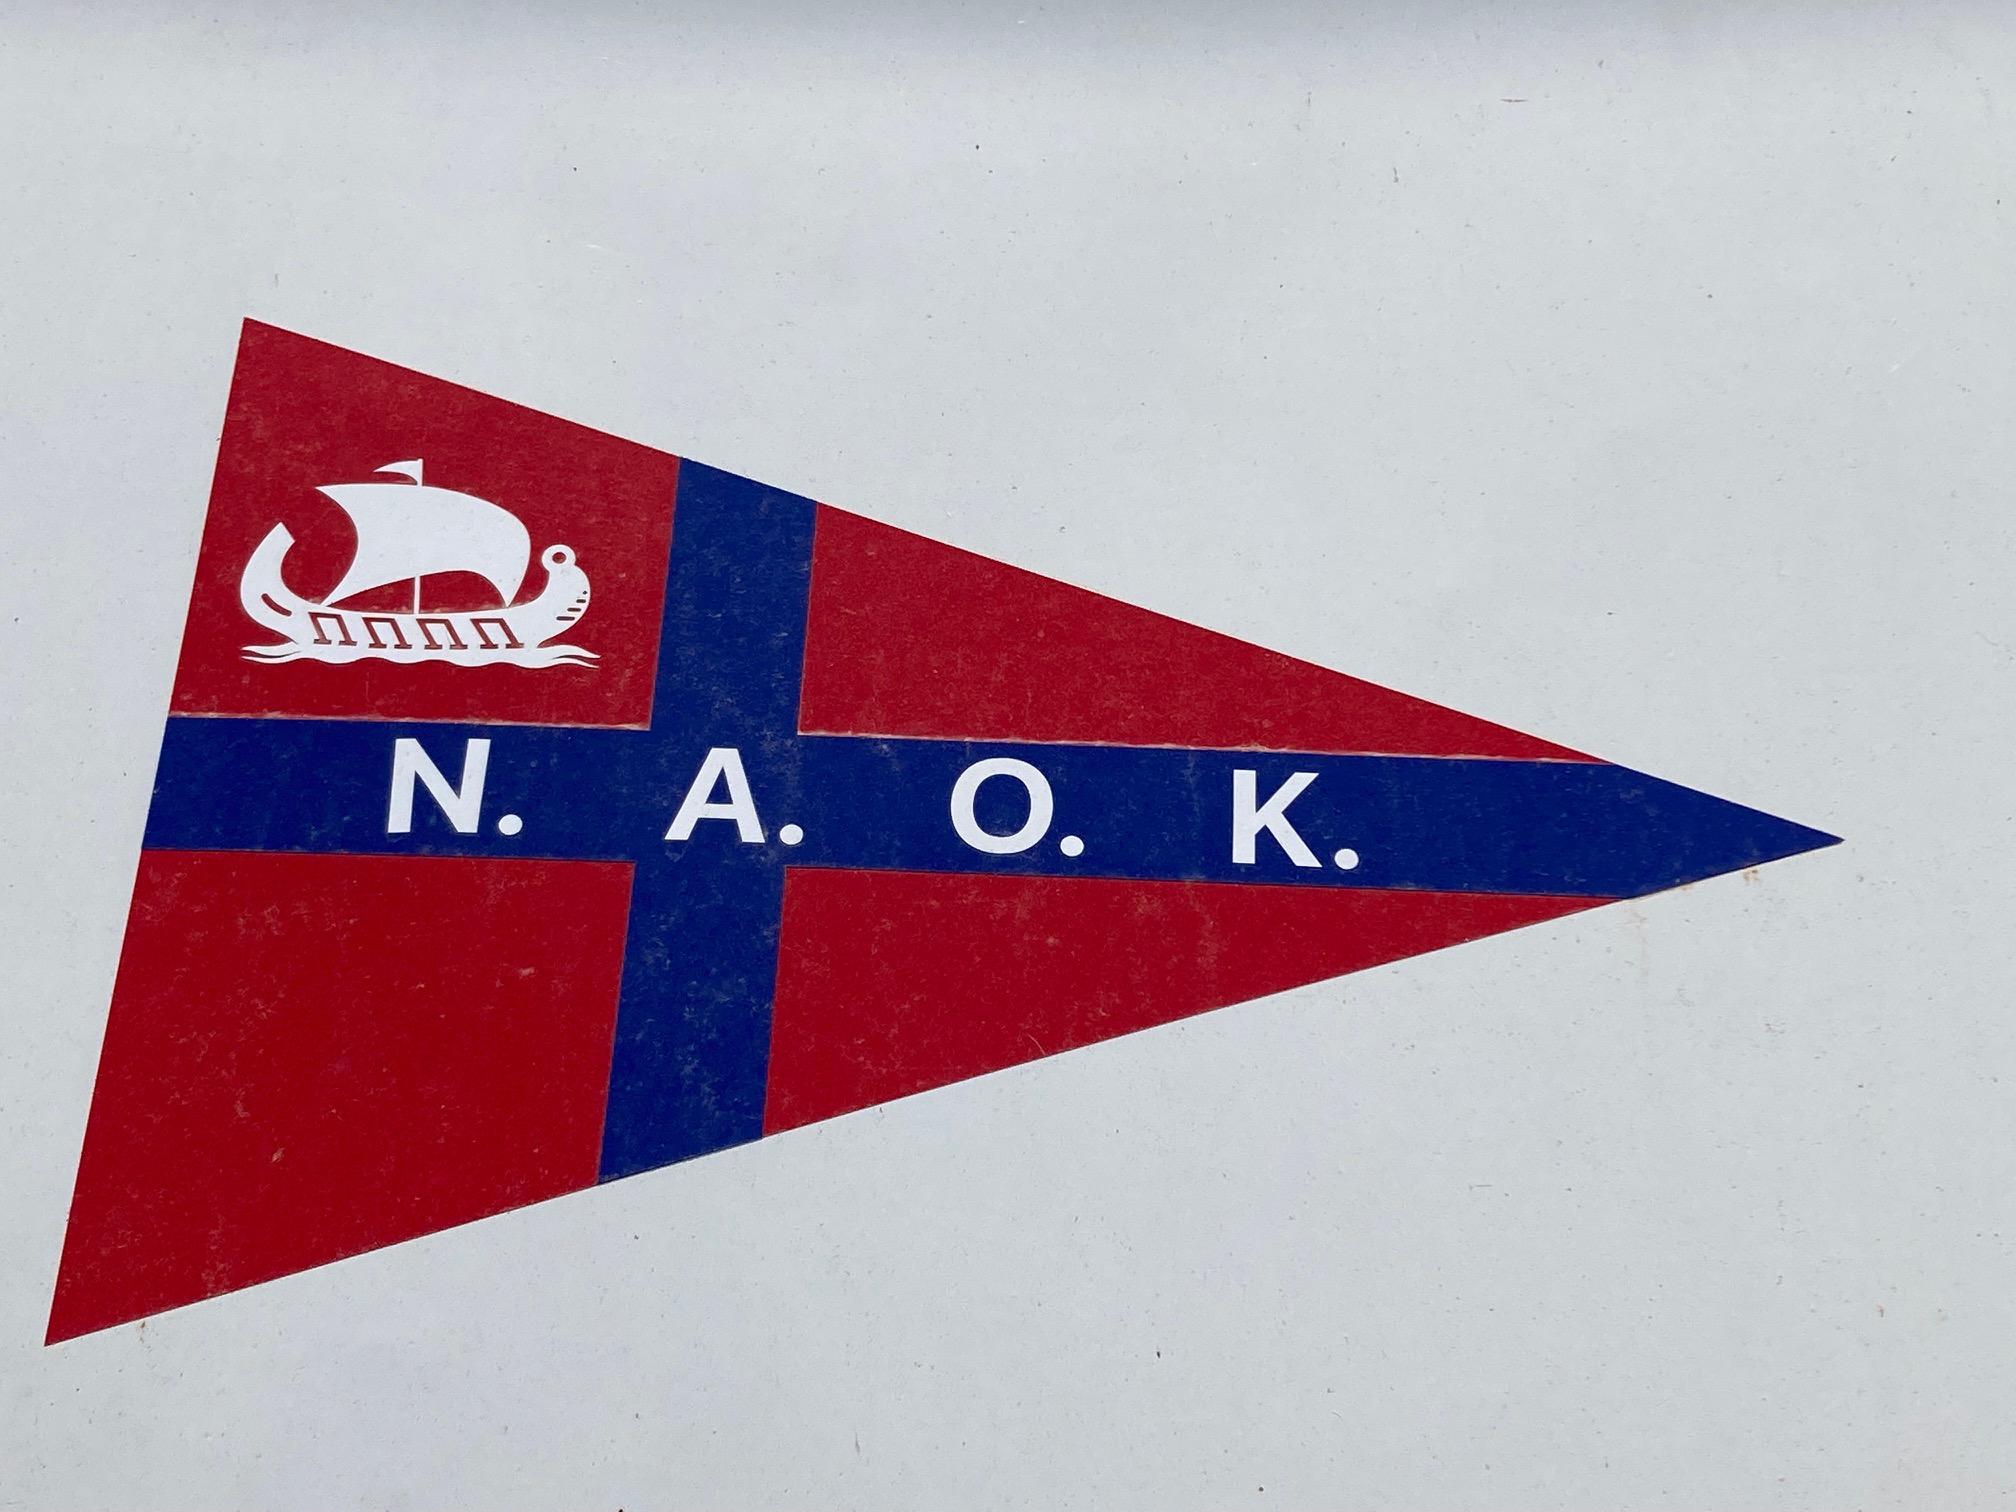 N.A.O.K. Nautical Club Corfu burgee